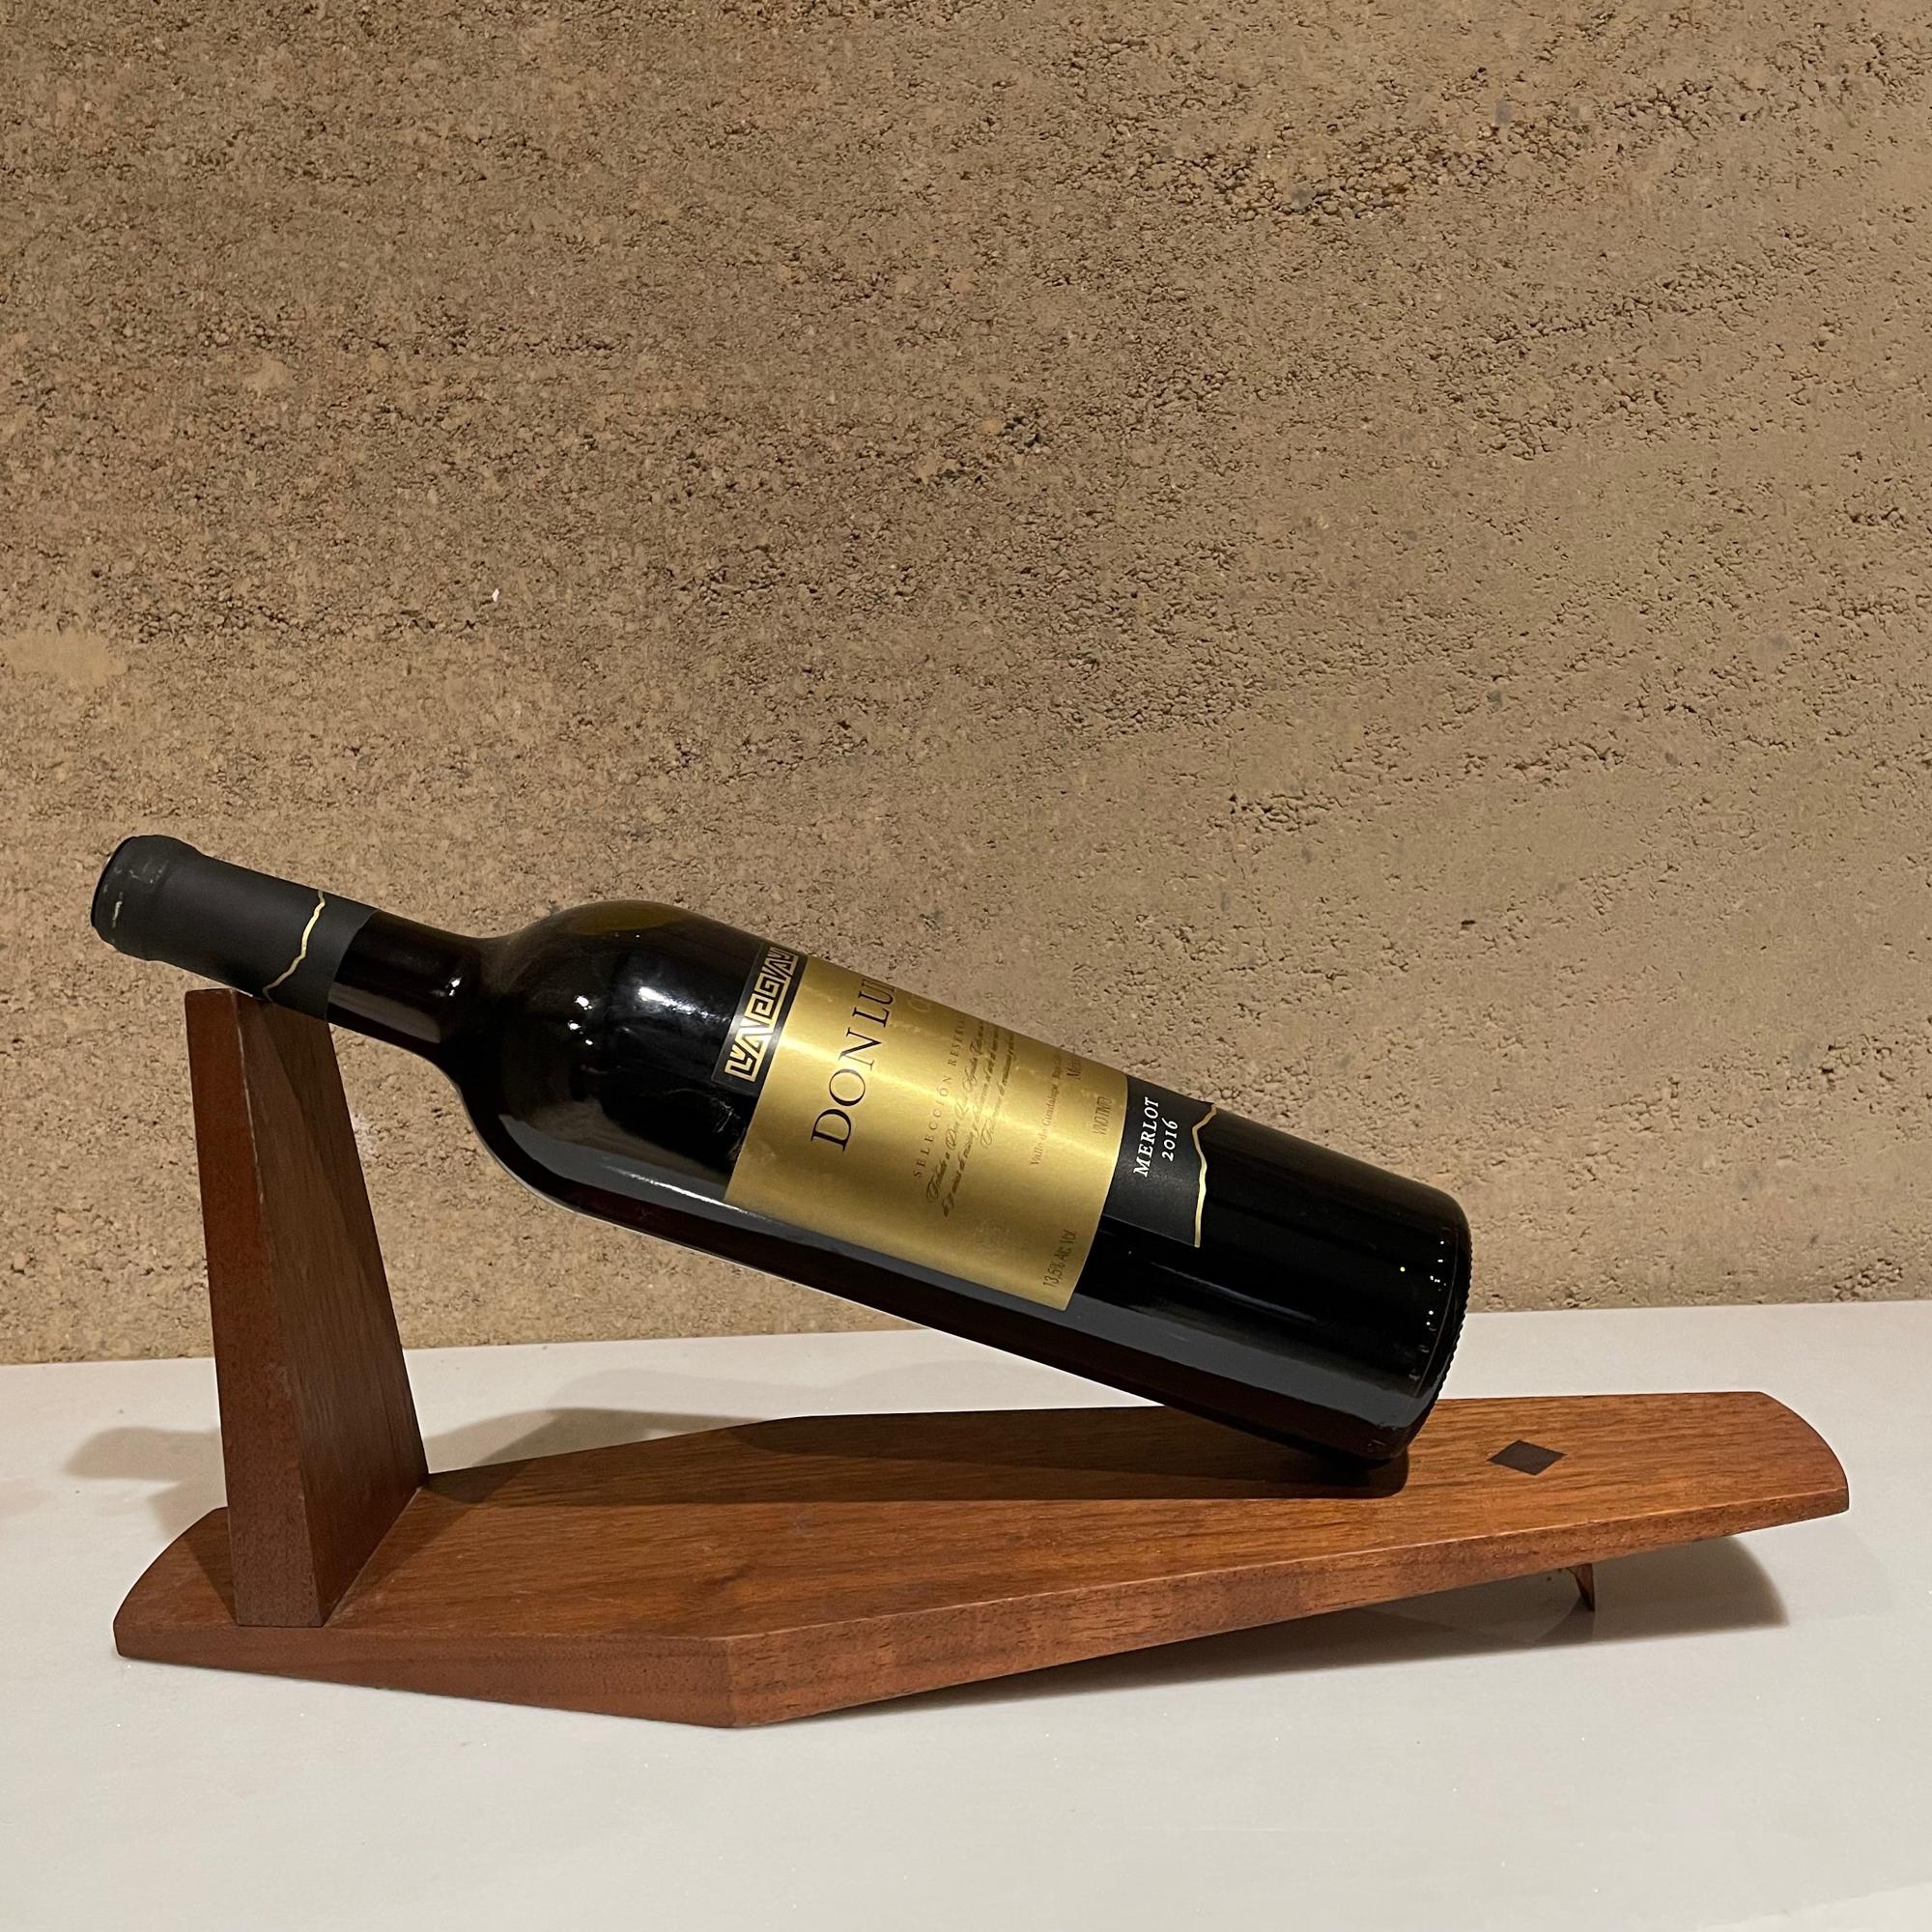 Artful Modernist Exotic Wood Wine Bottle Cradle Holder Studio Piece 1960s Calif 1